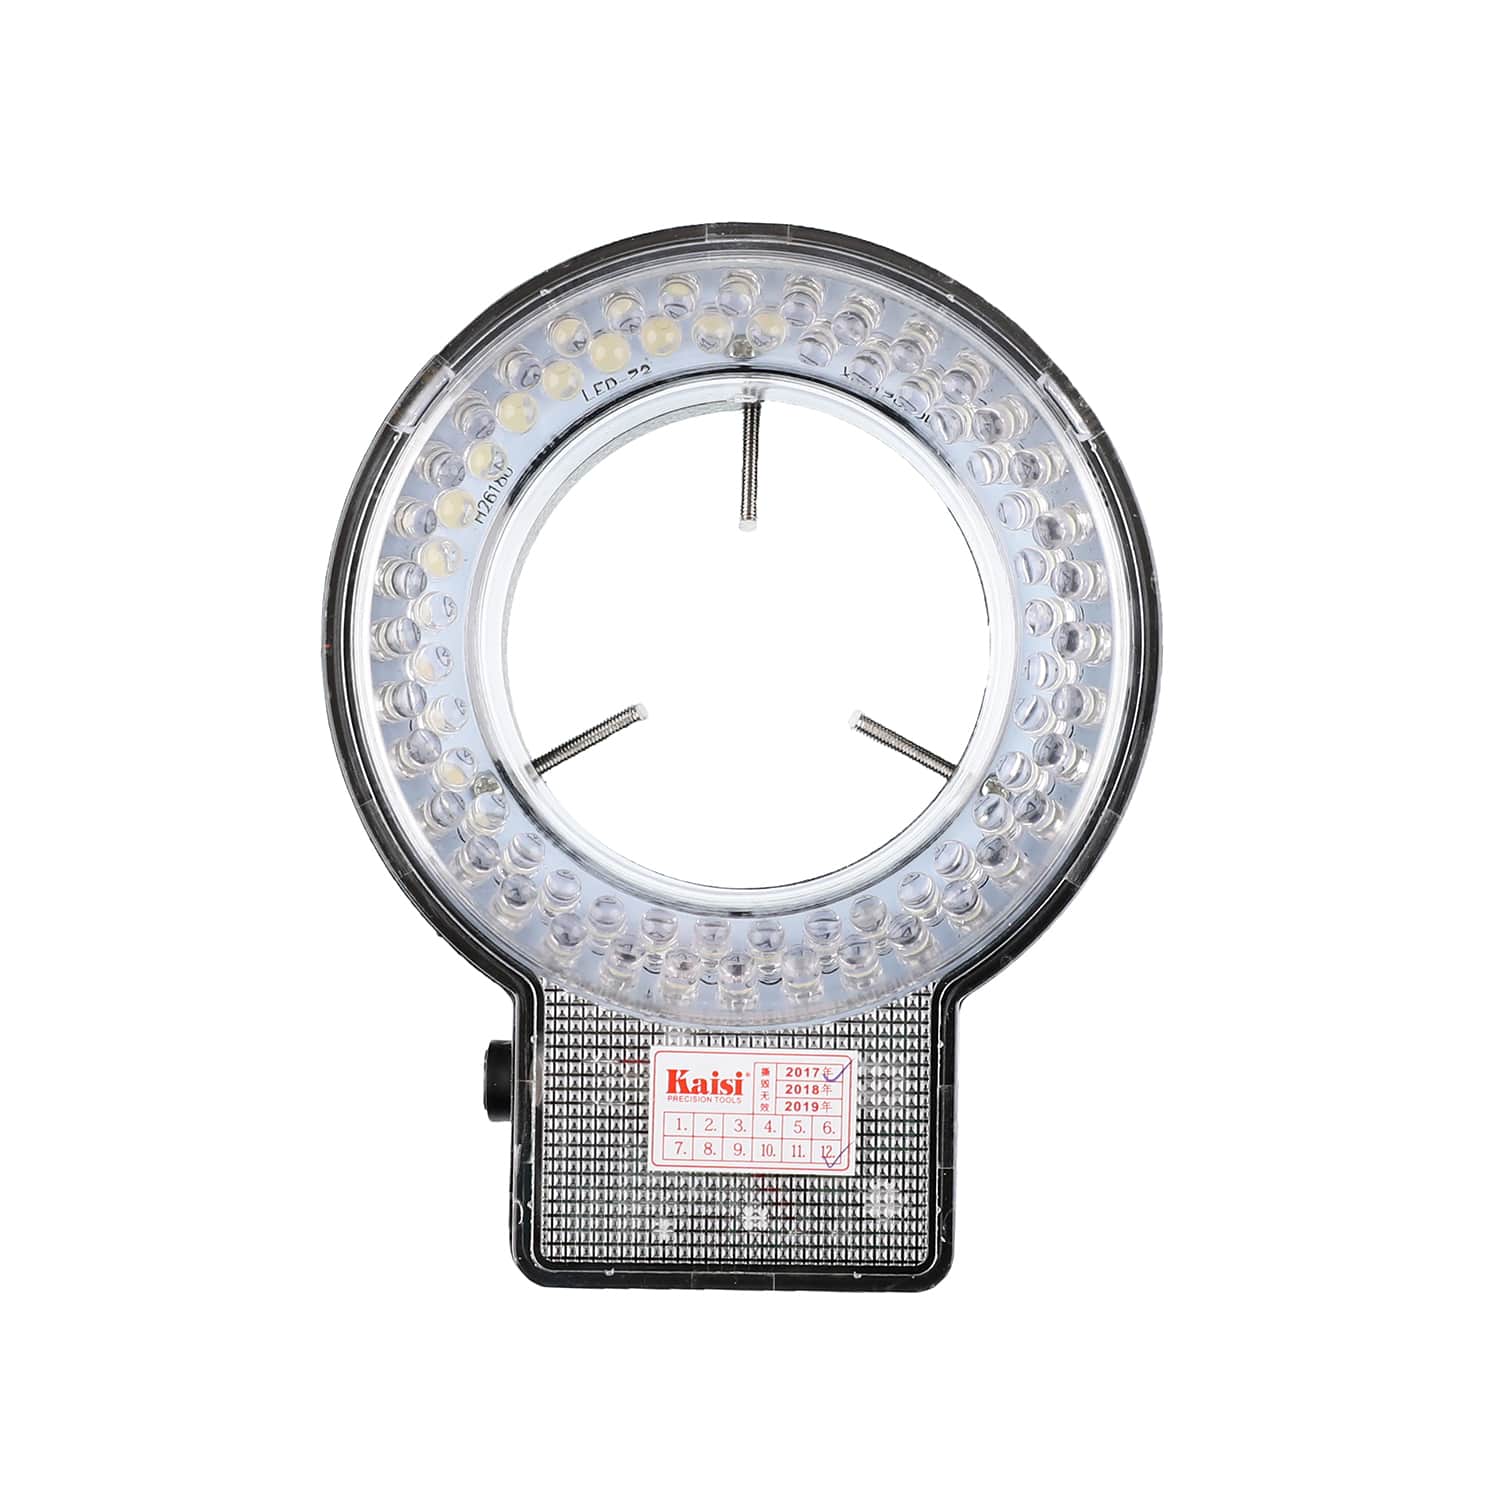 KAISI K-D072J ANNULAR ADJUSTABLE RING LED LAMP FOR MICROSCOPE